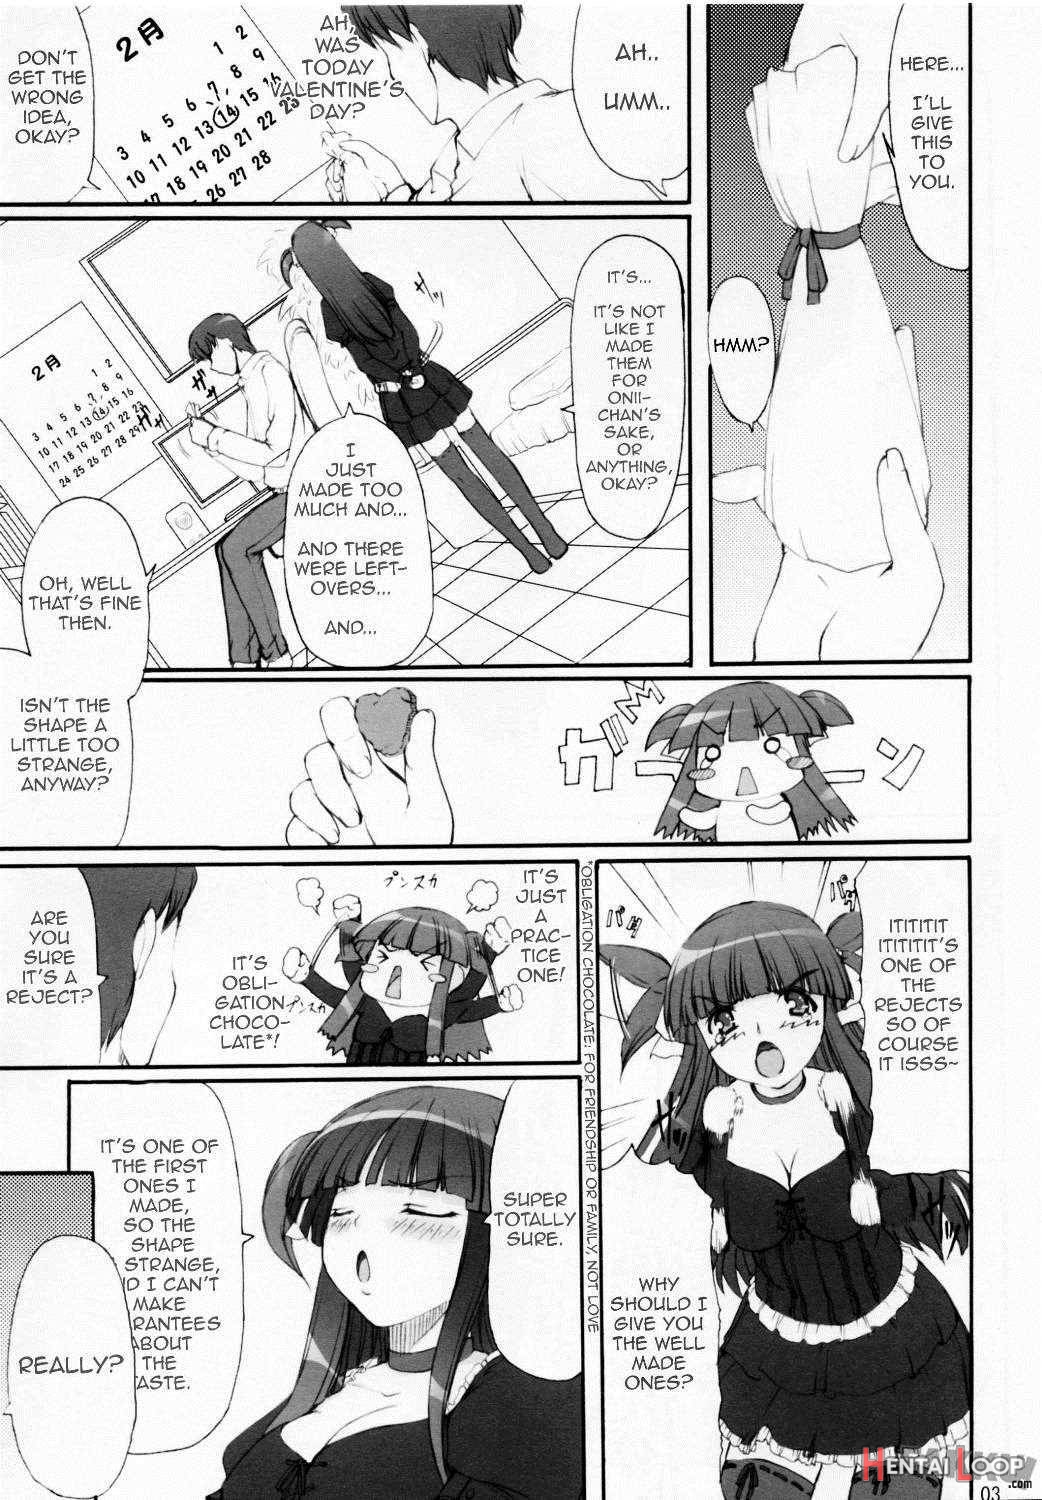 Tsukasa Valentine Dream page 3